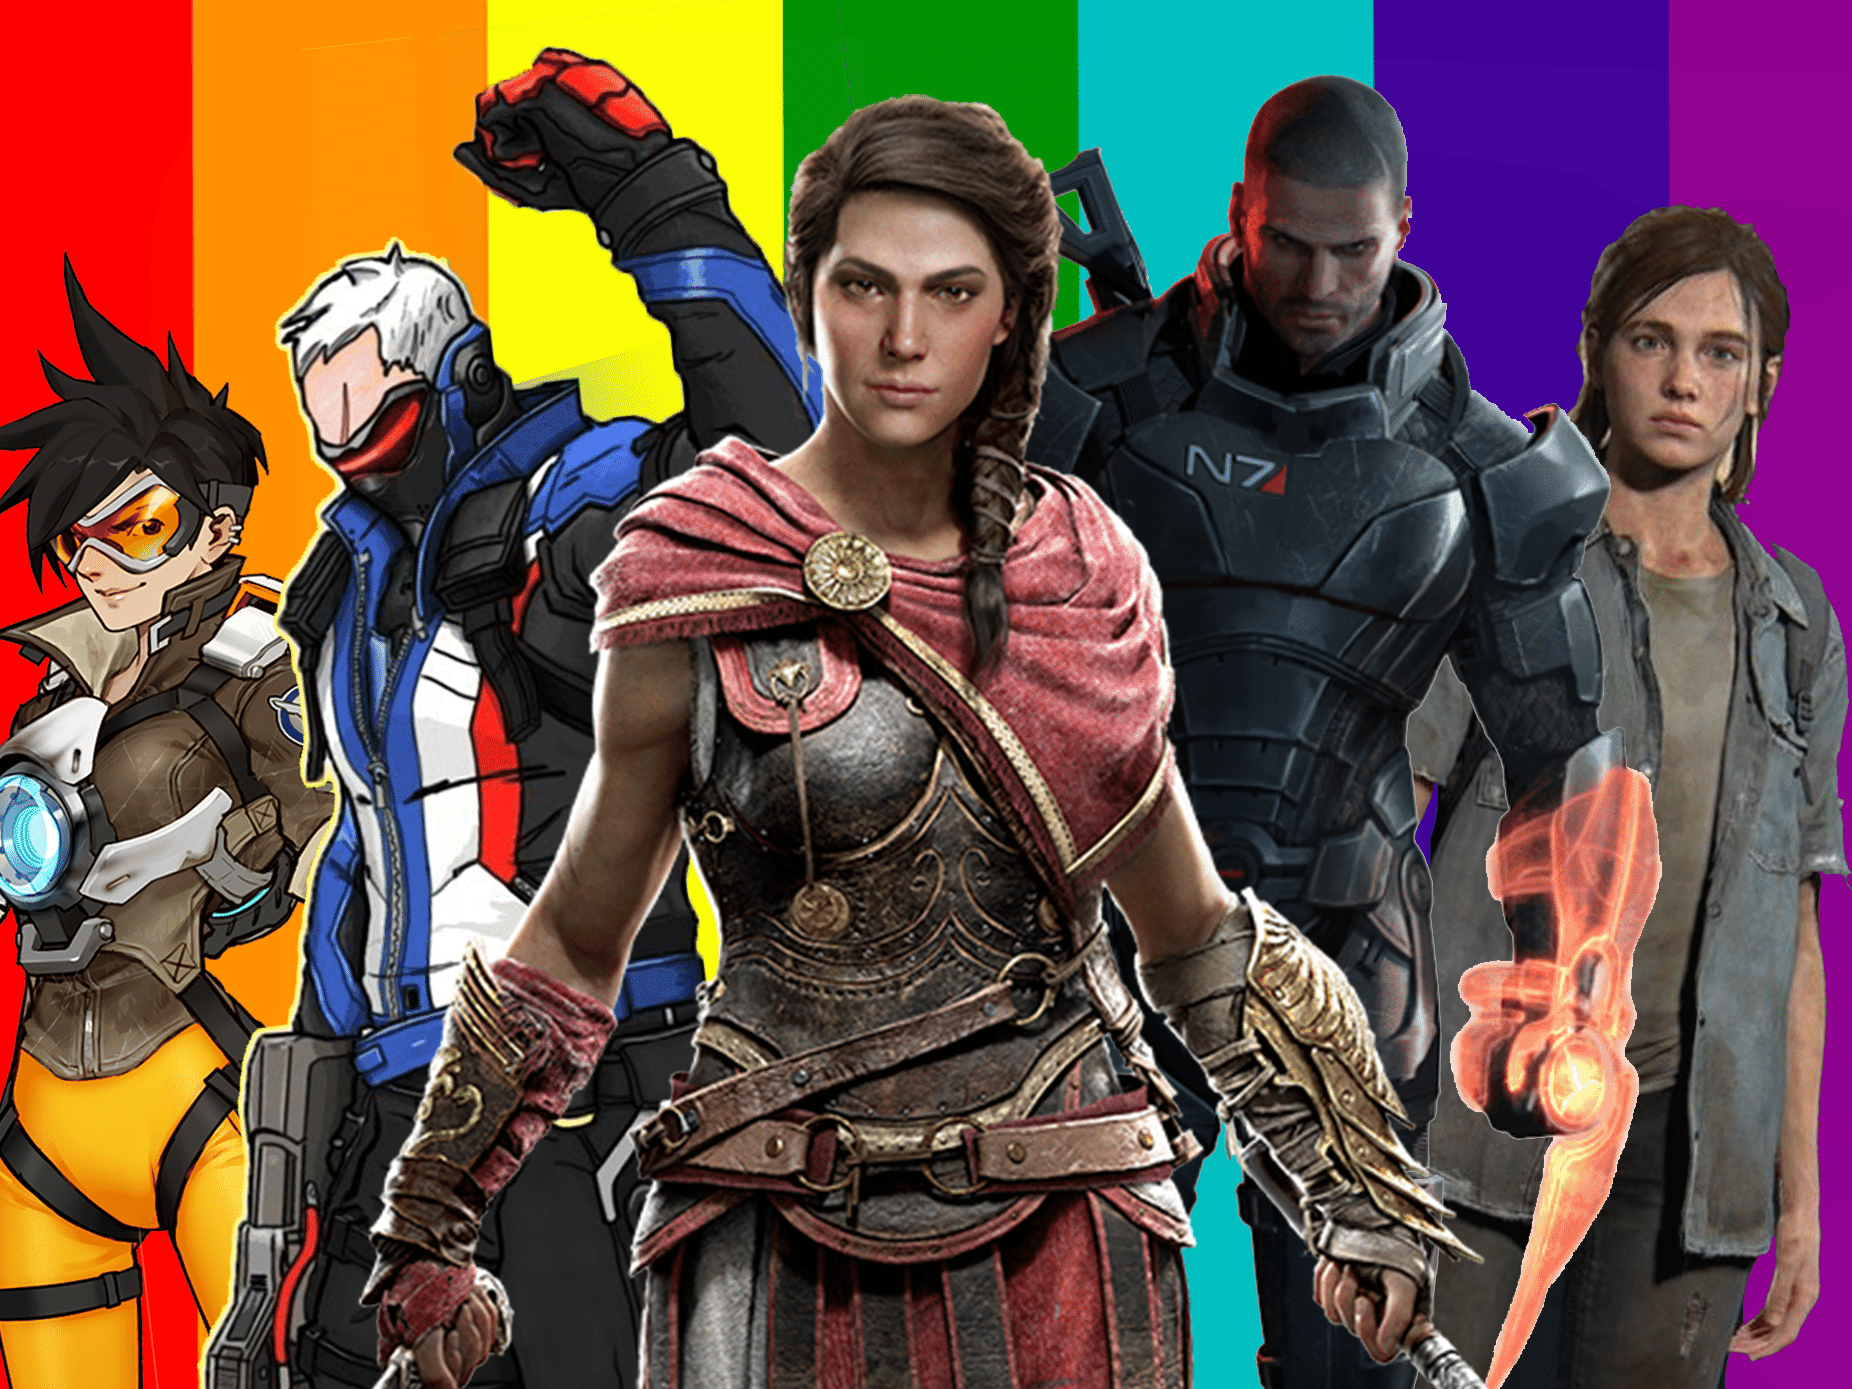 Games: personagens LGBTs ganham espaço, mas ainda são tabu